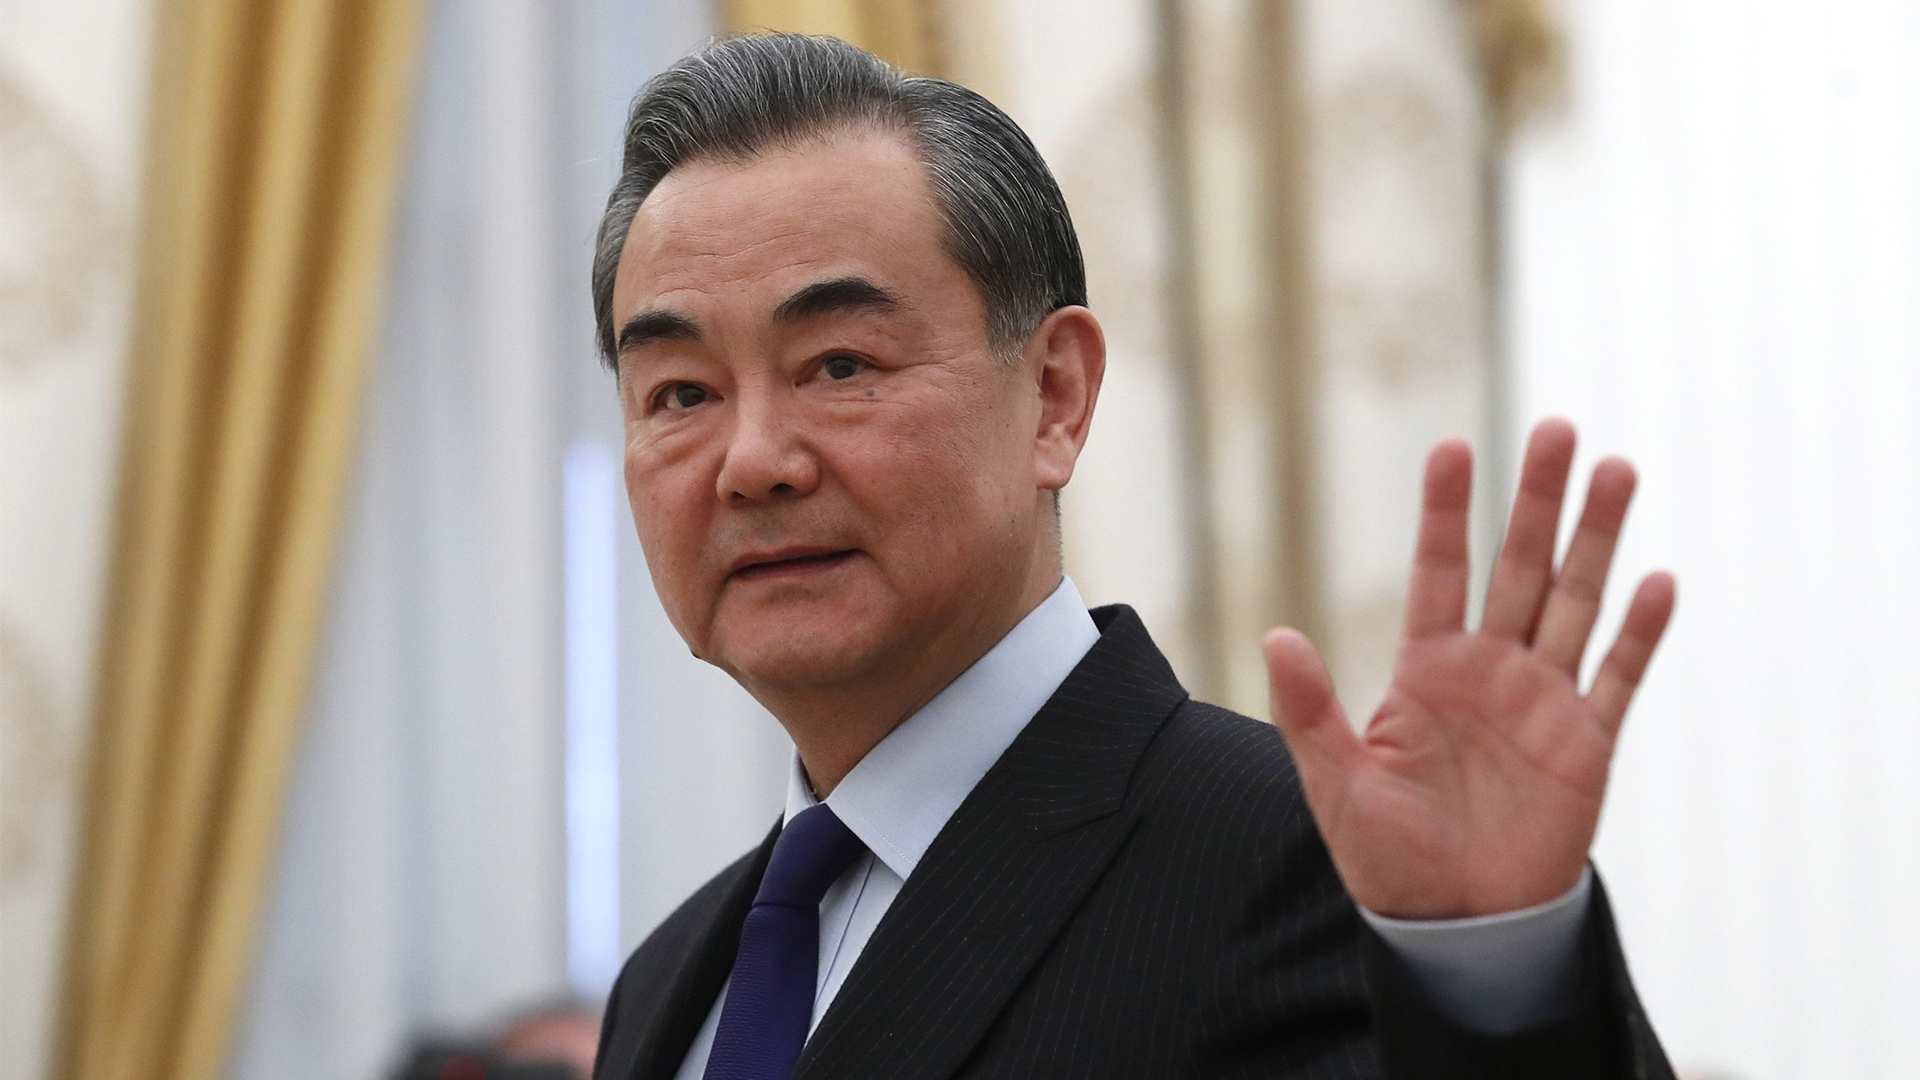 министр иностранных дел китая